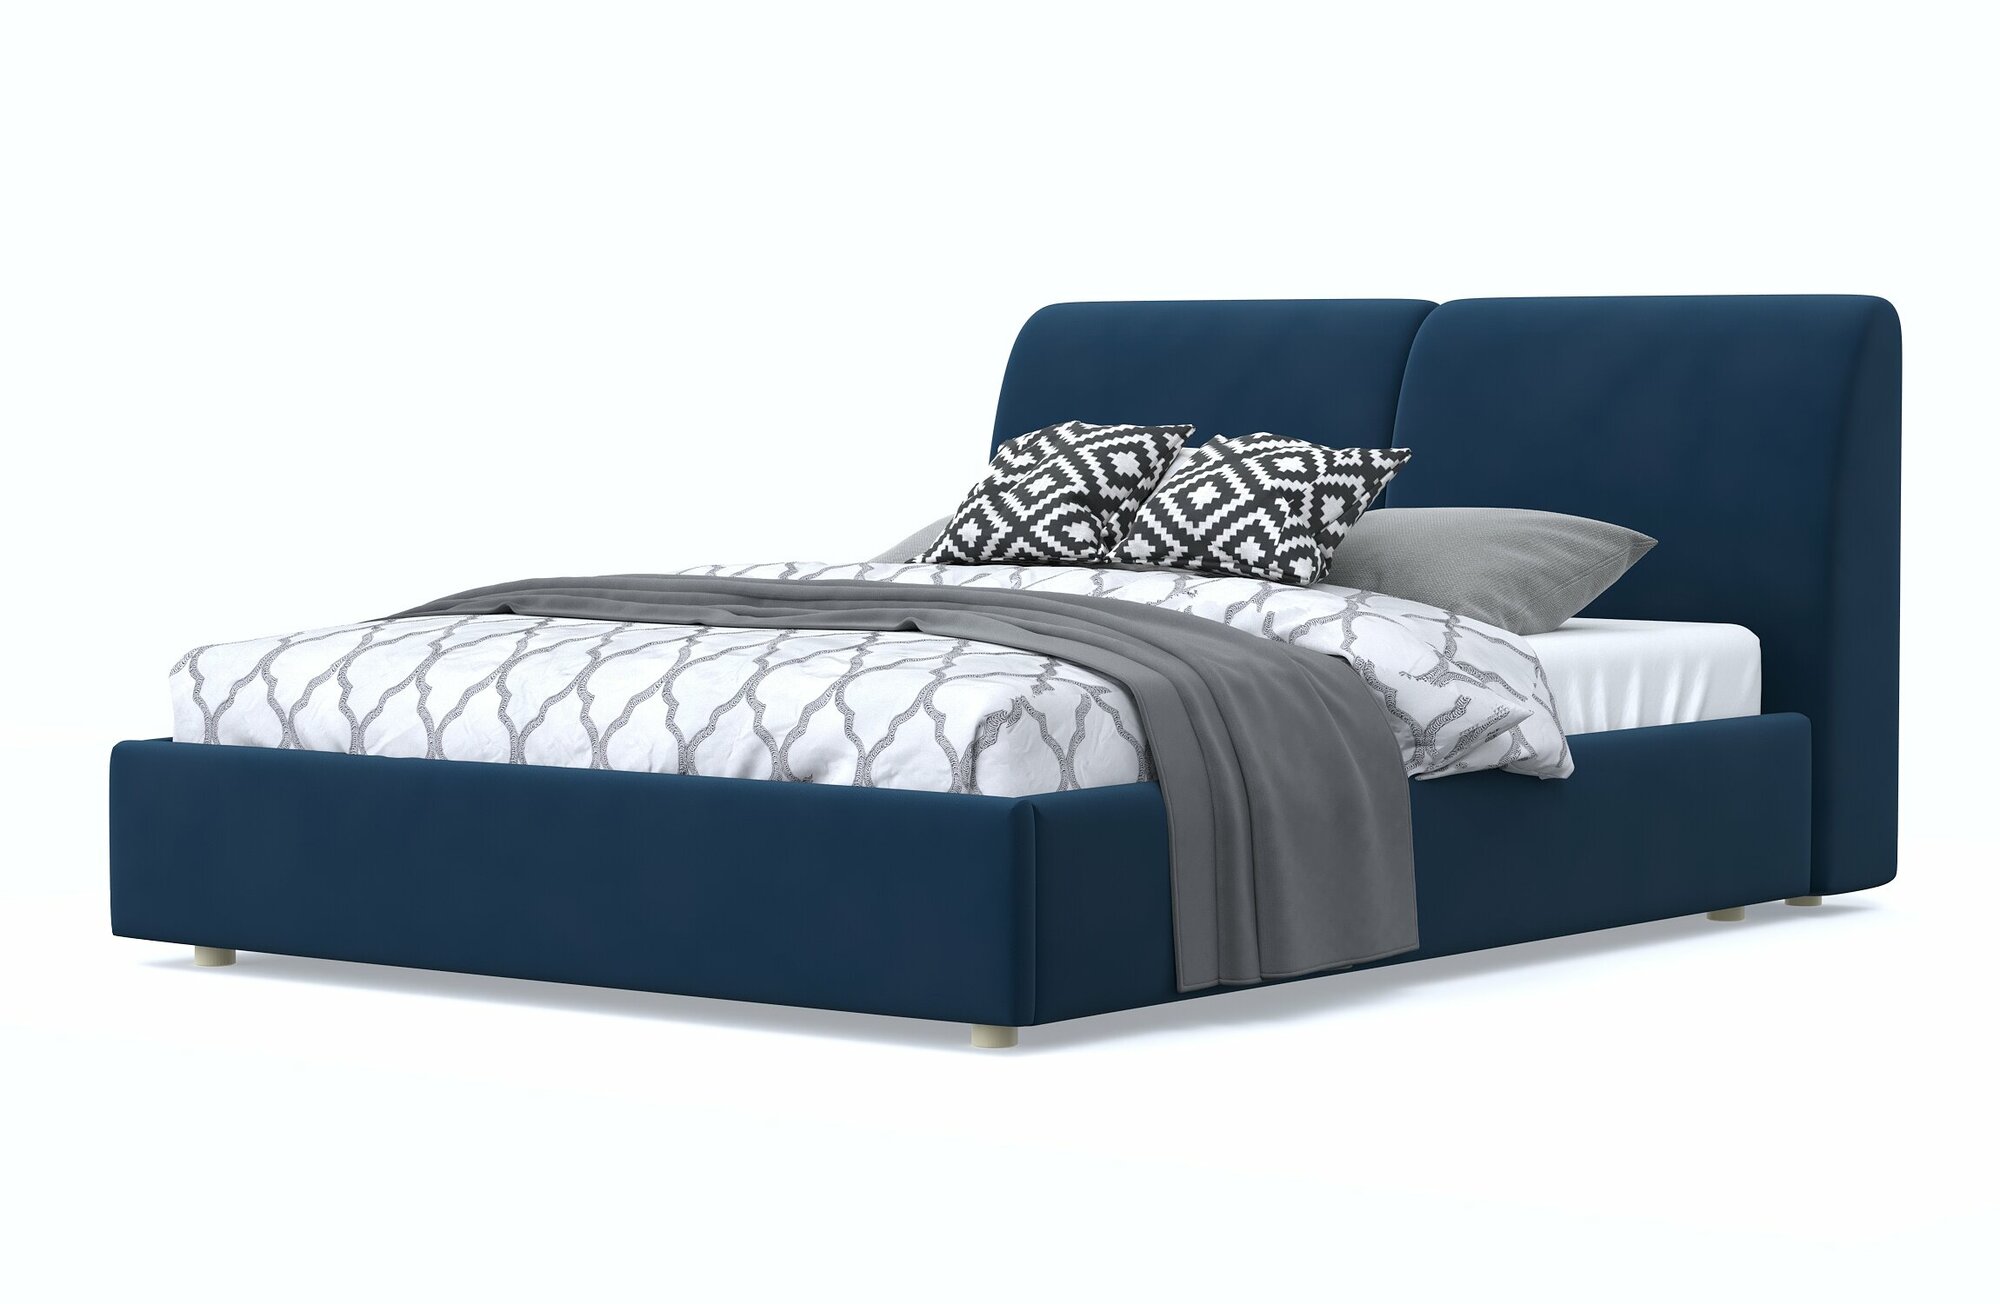 Двуспальная кровать бекка 140х200, с мягким изголовьем, синий, велюр, деревянная, на ножках